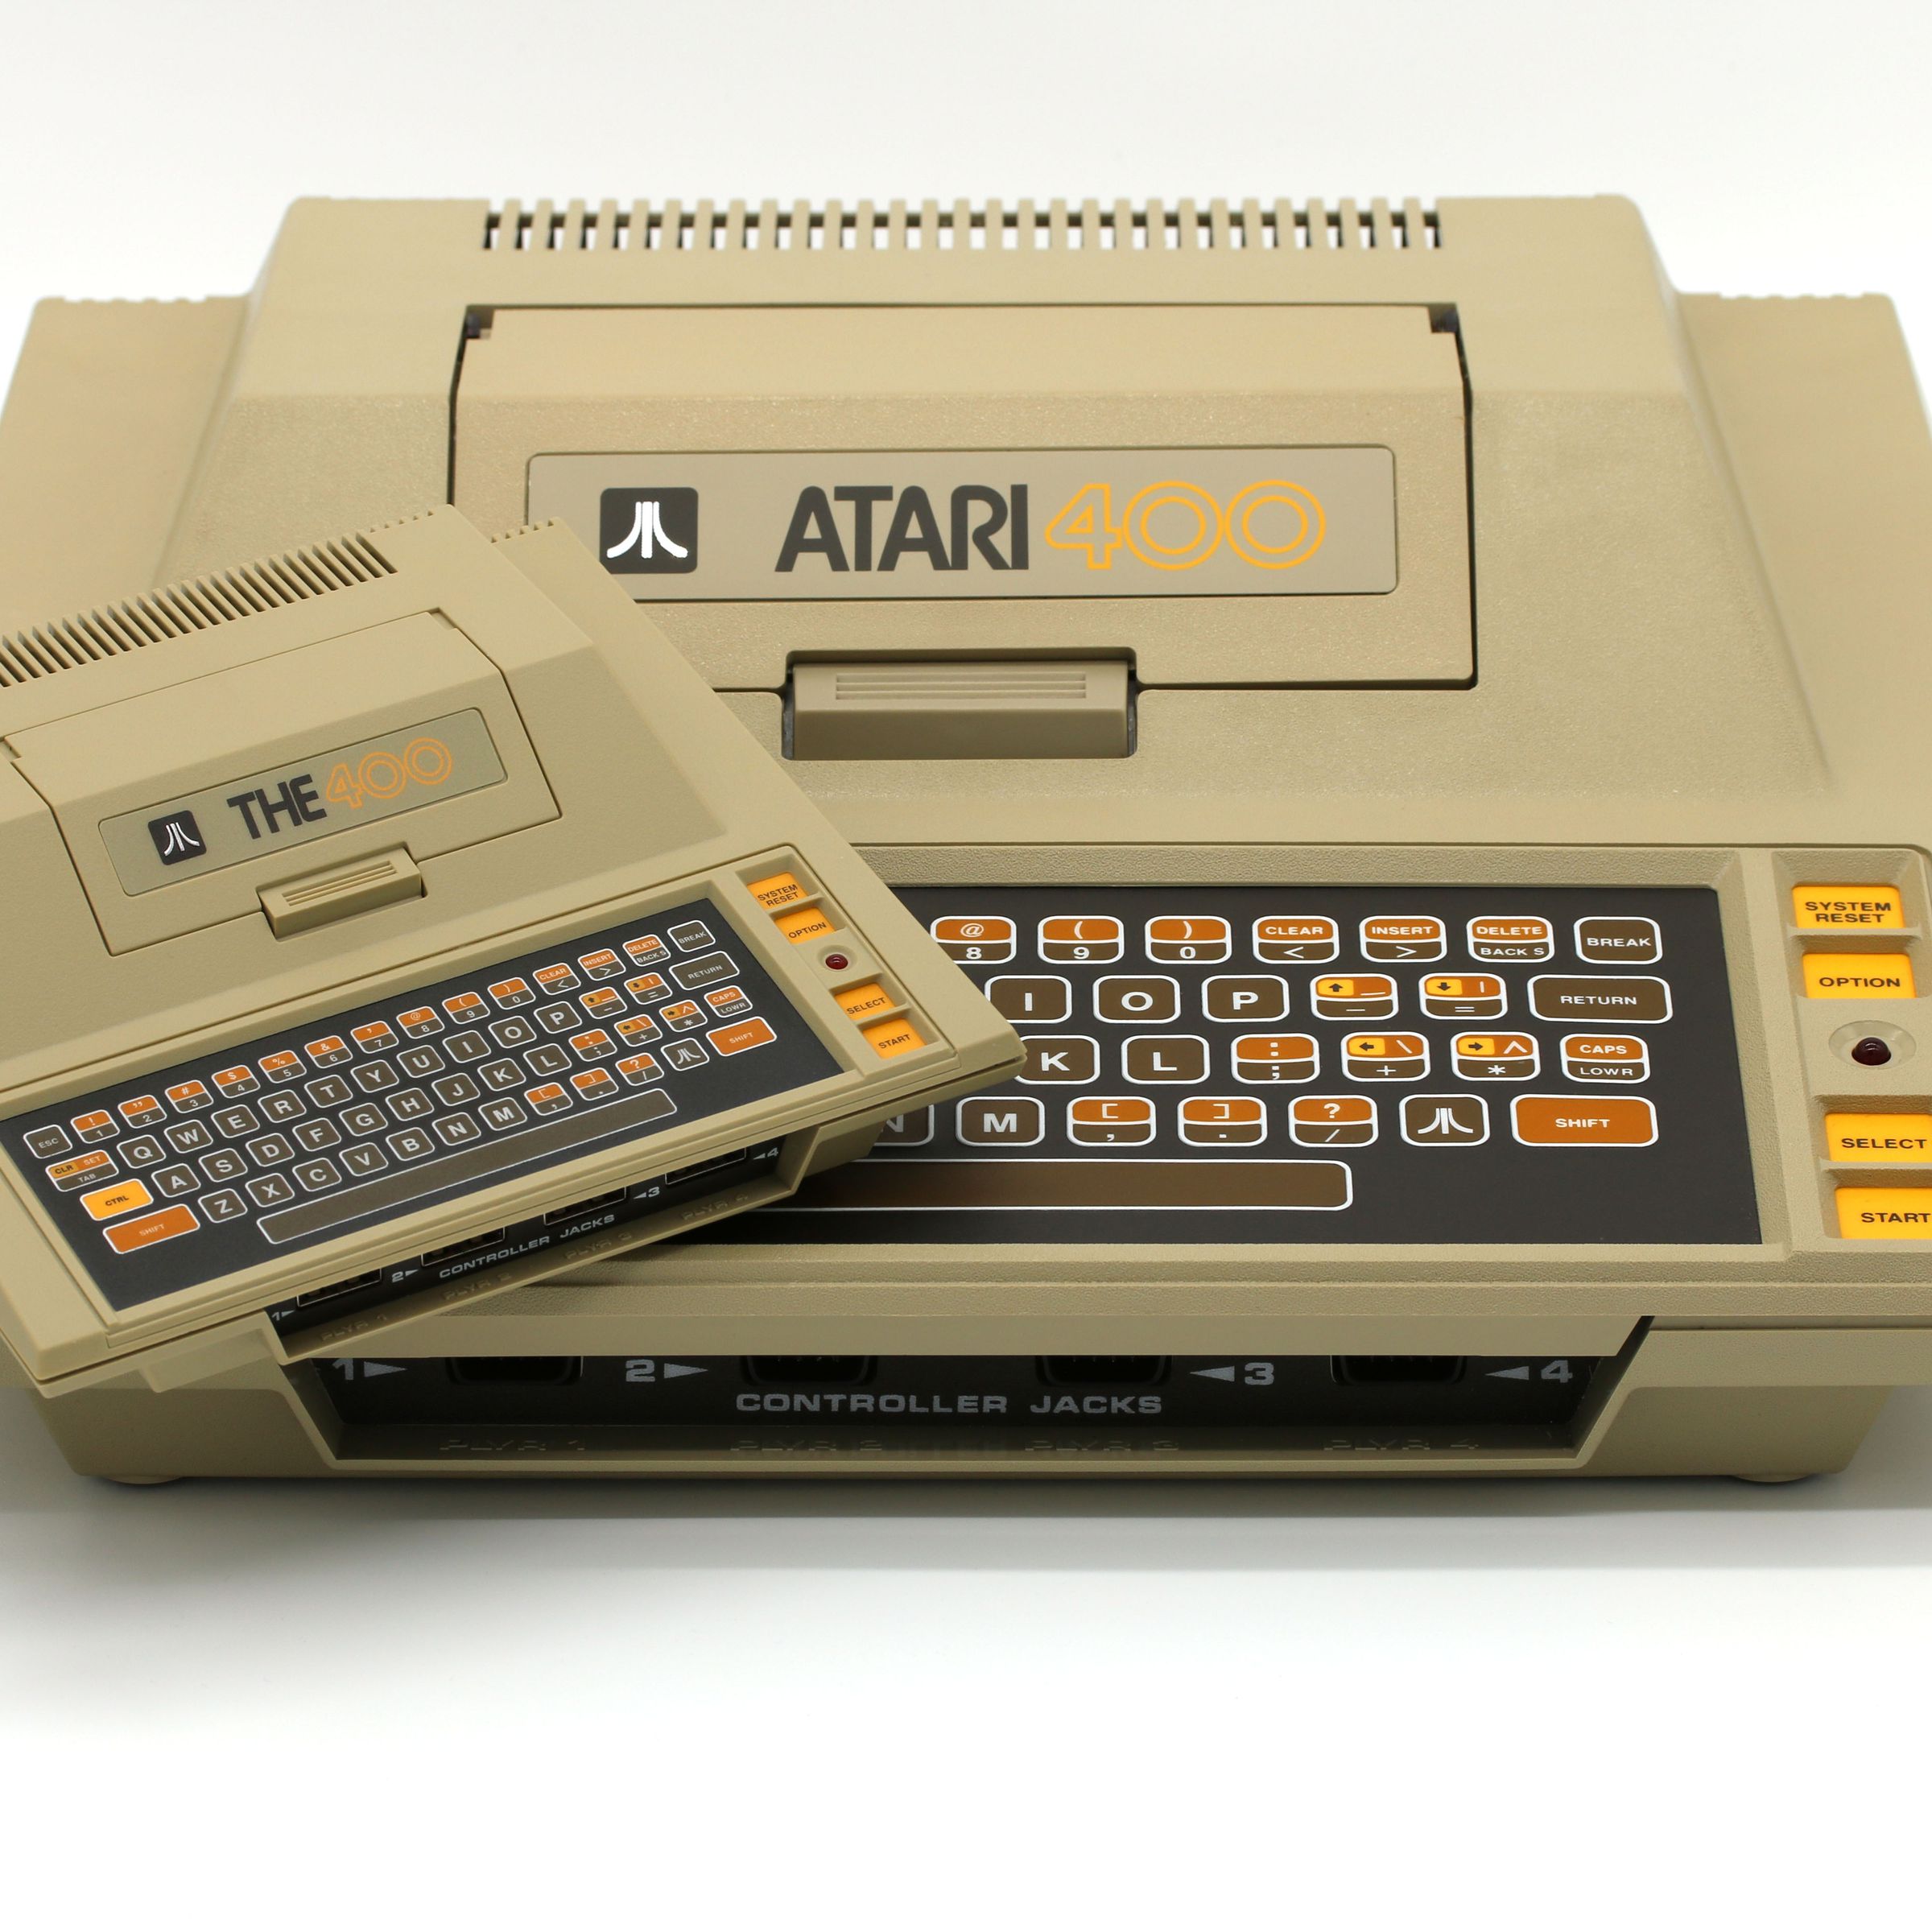 A promotional photo of the Atari 400 Mini.